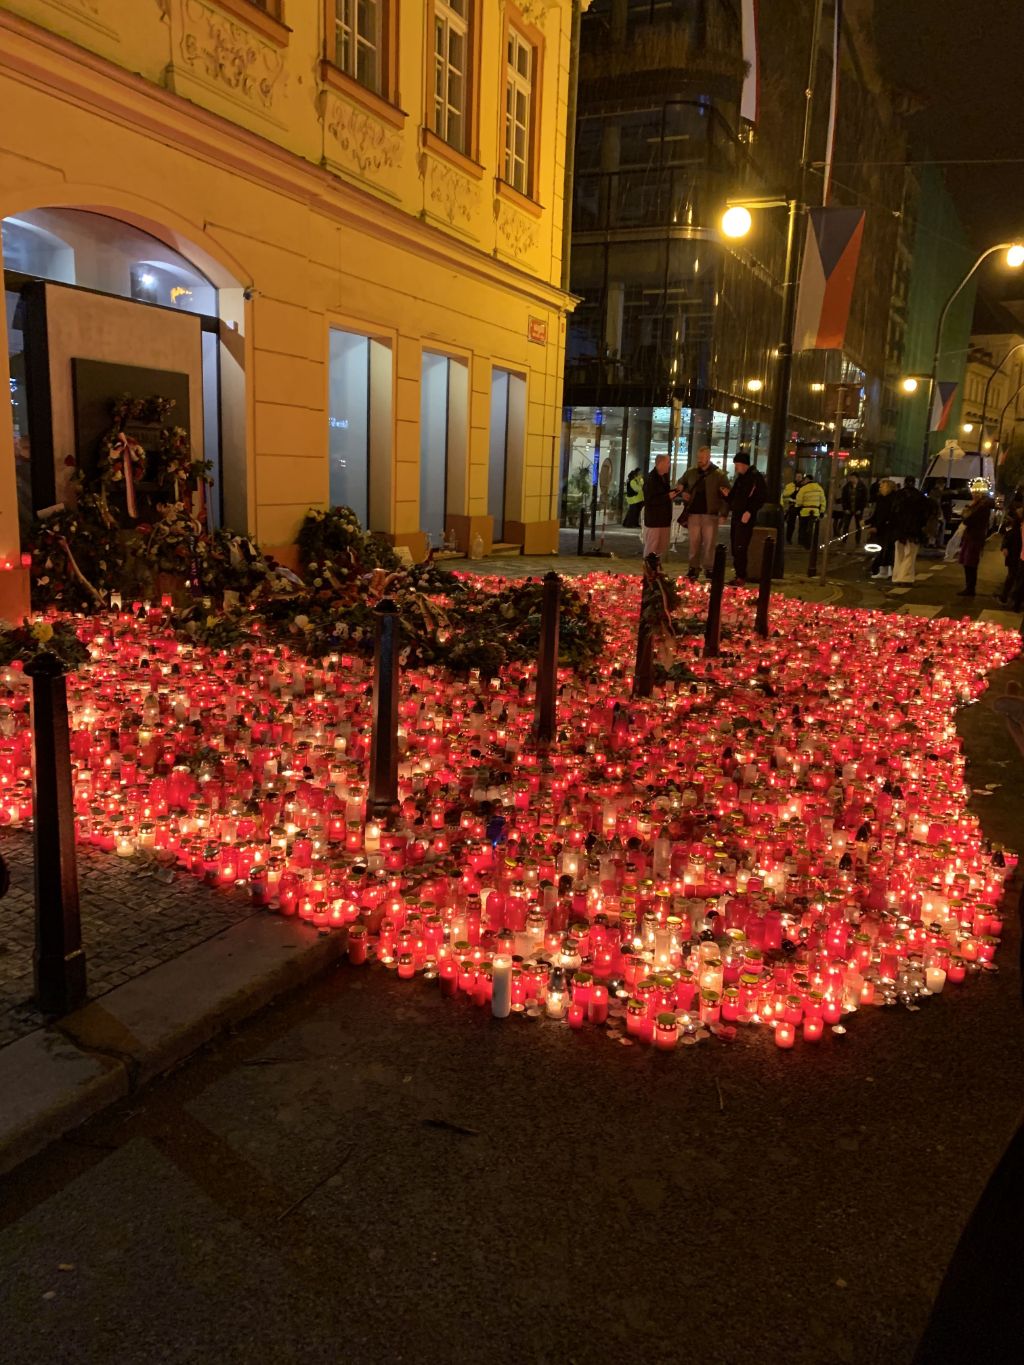 Bei Nacht strahlen tausende von Kerzen vor einem beleuchteten Gebäude.